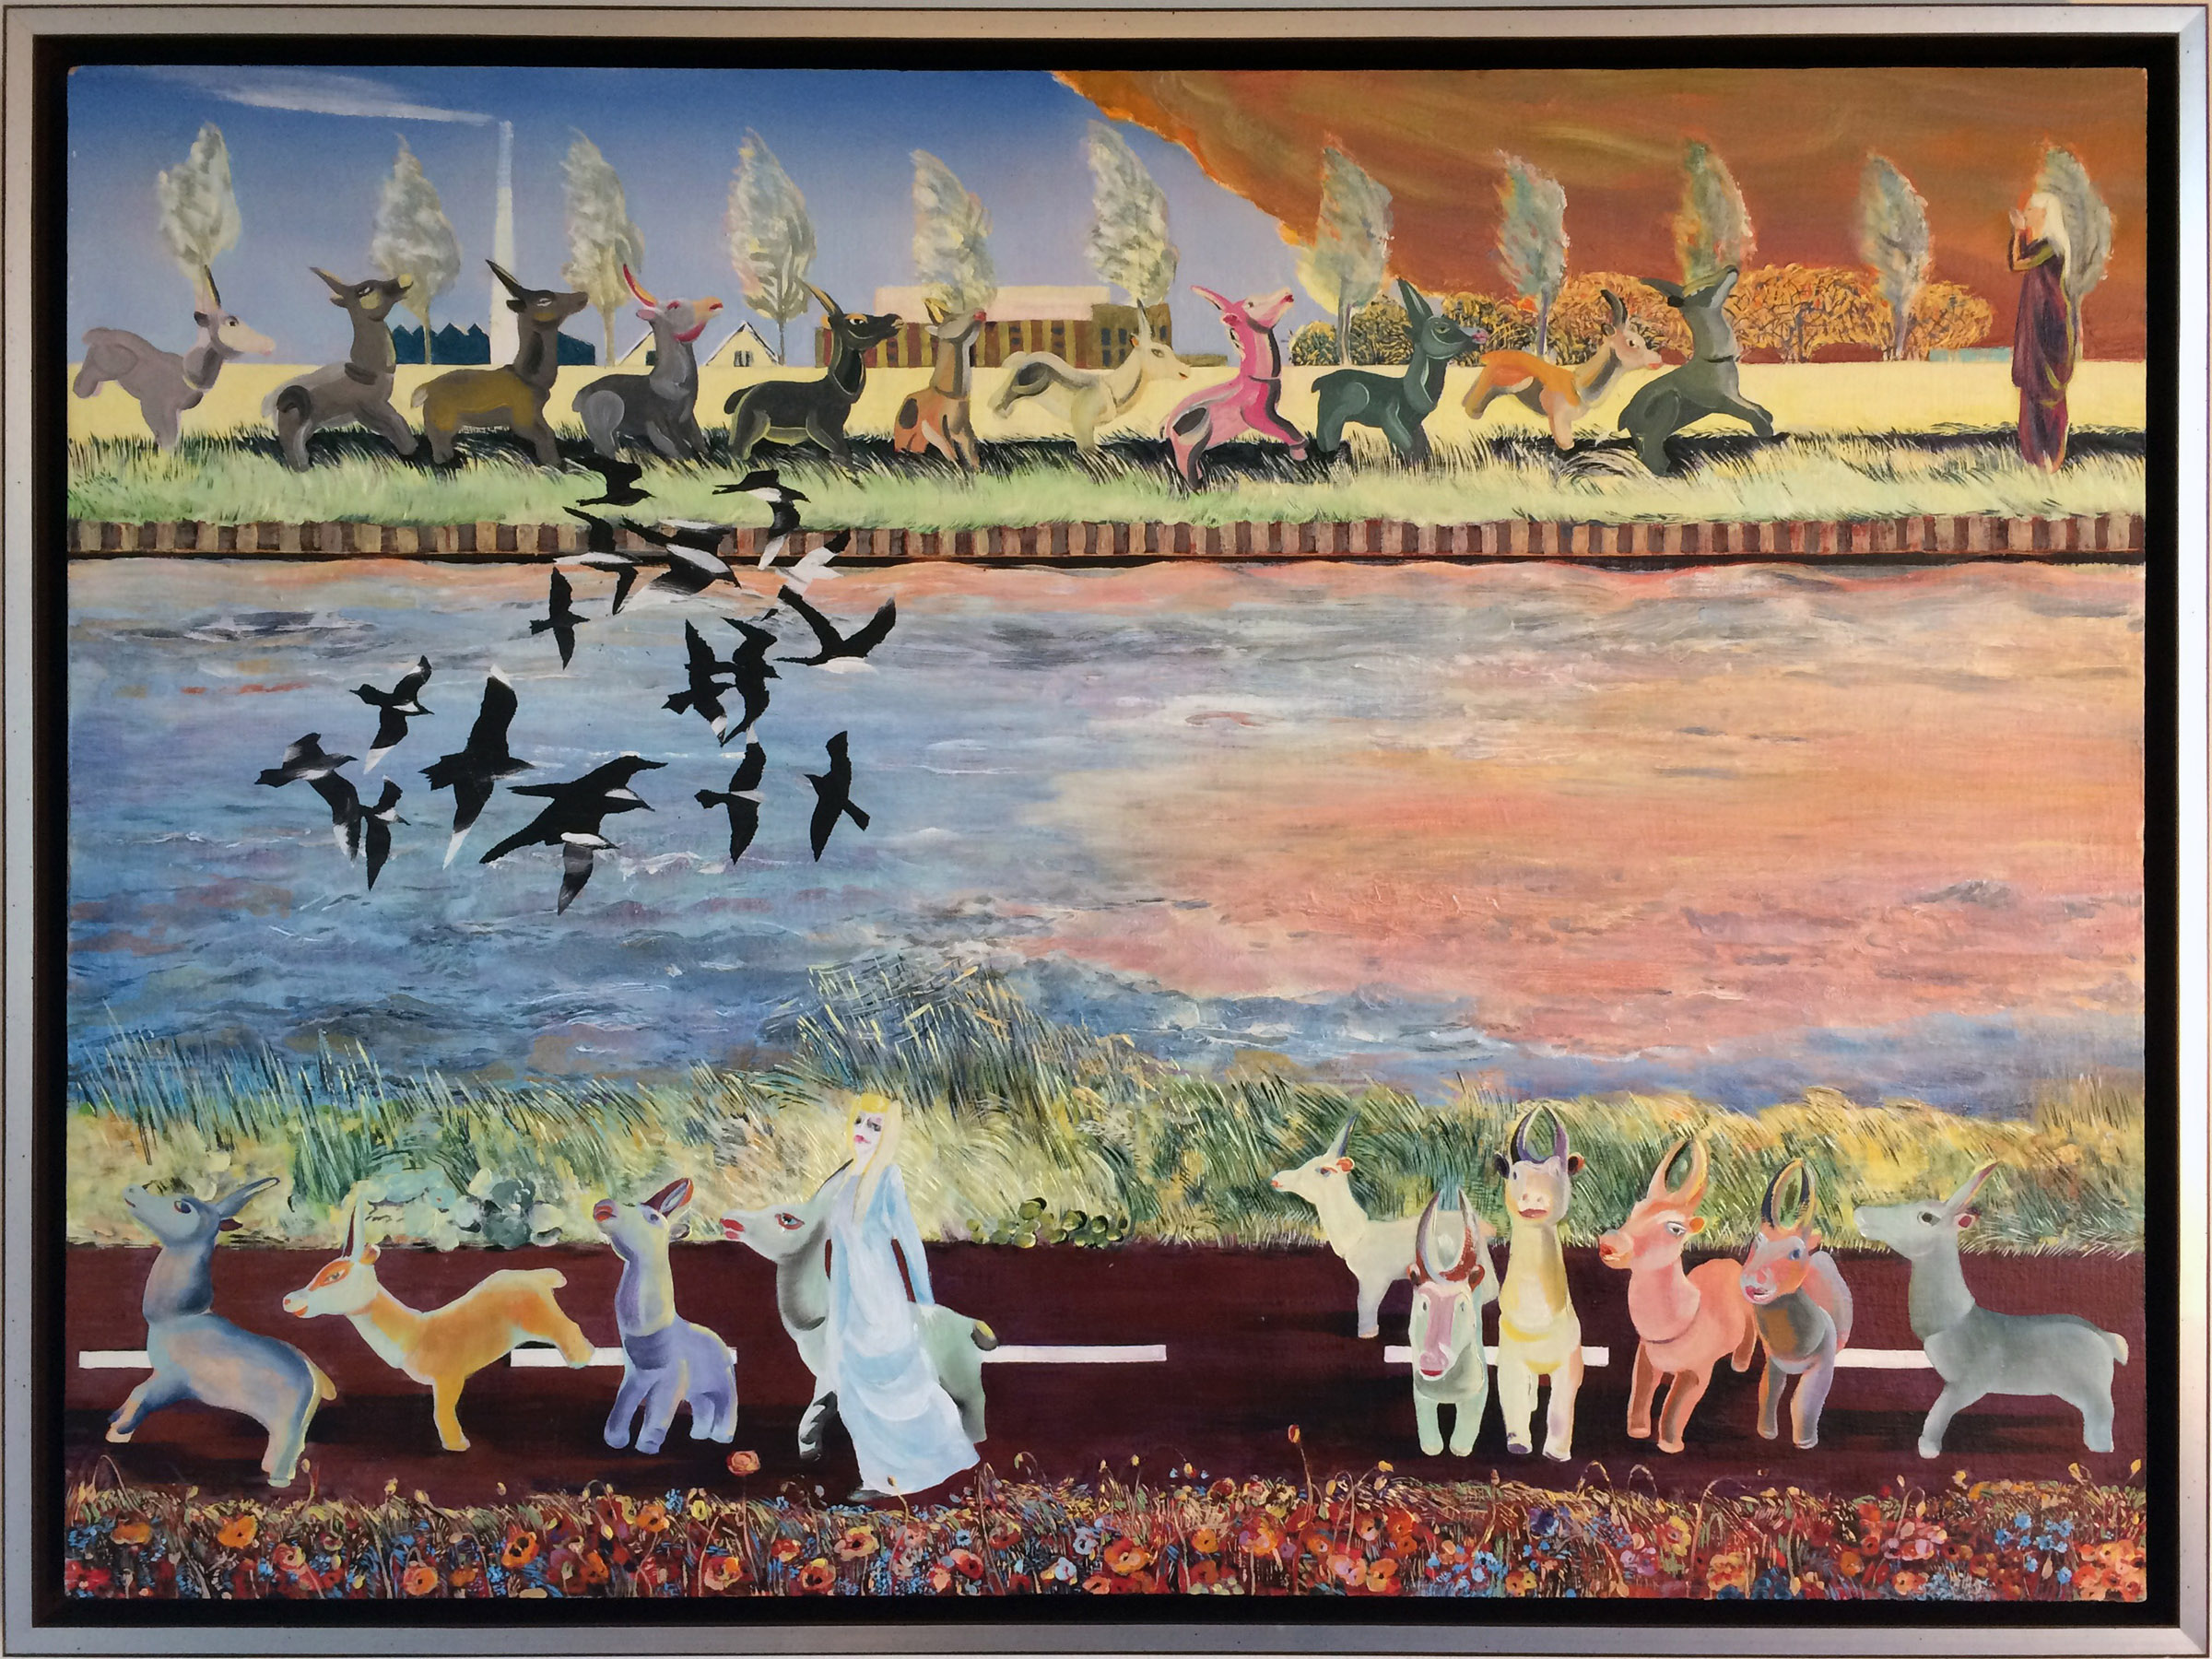 schilderij van Amsterdam-Rijnkanaal met hertjes en vogels en herderin - Cornelia Vrolijk